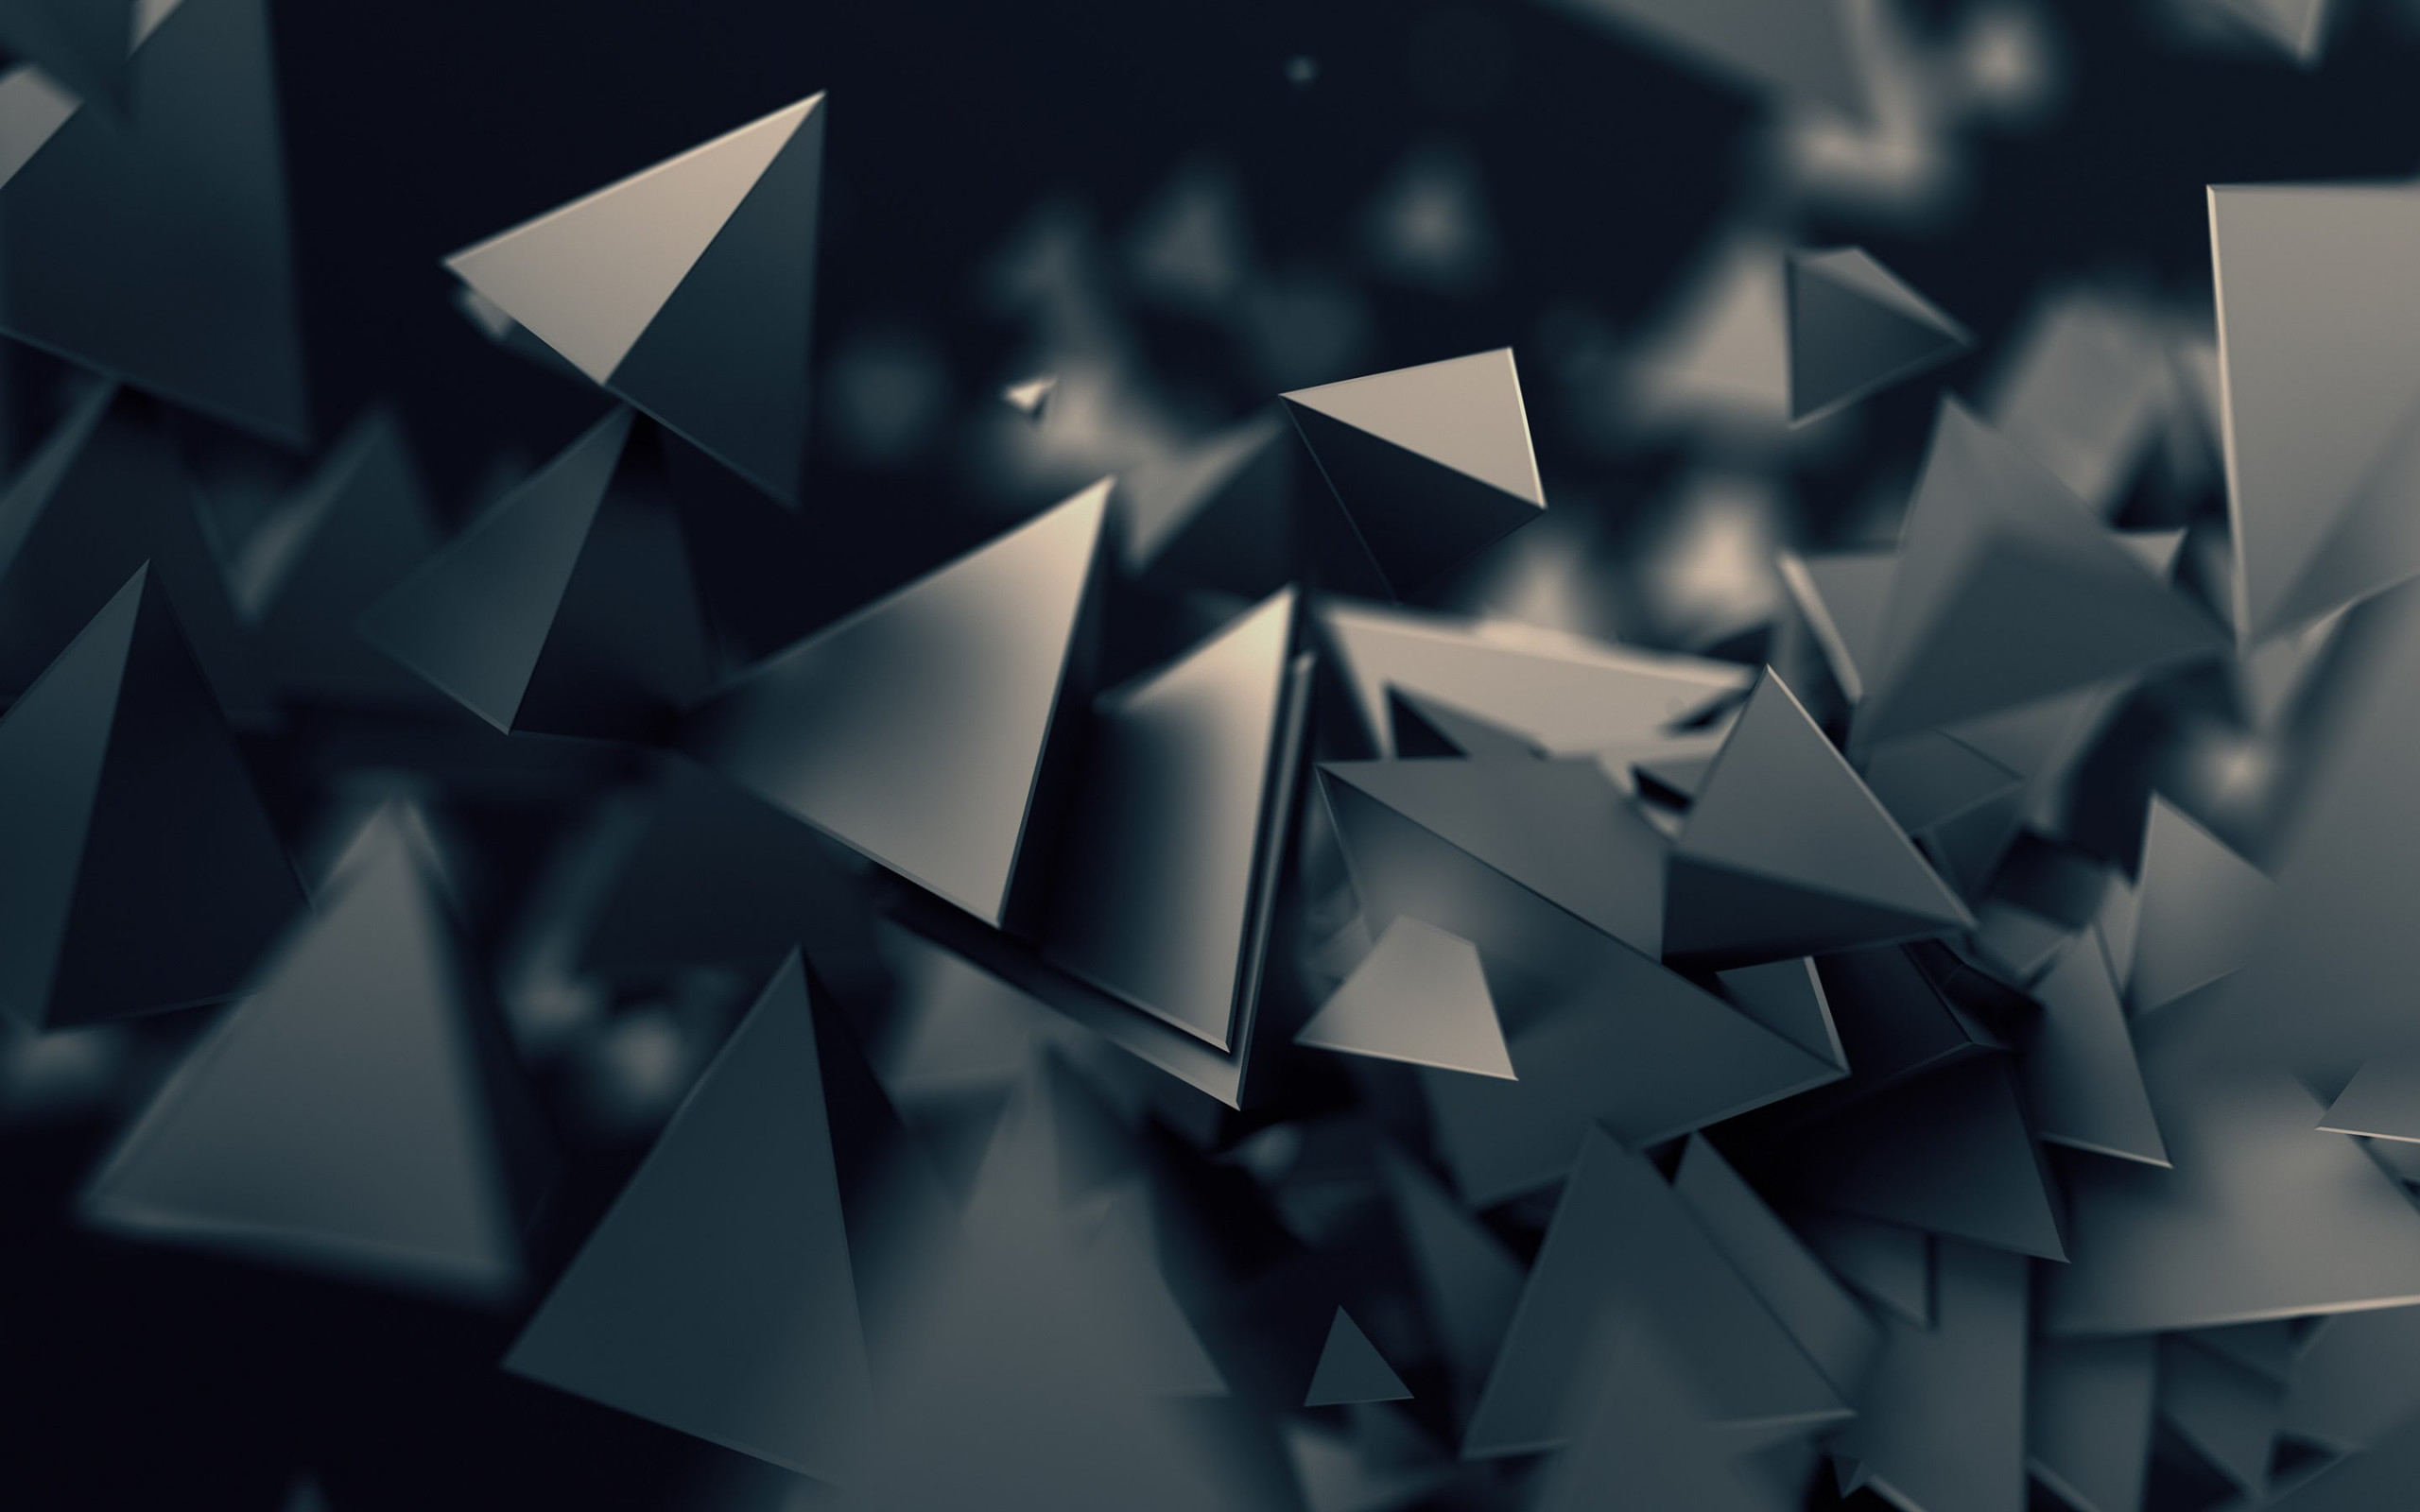 Triangular prisms wallpaper 2560x1600